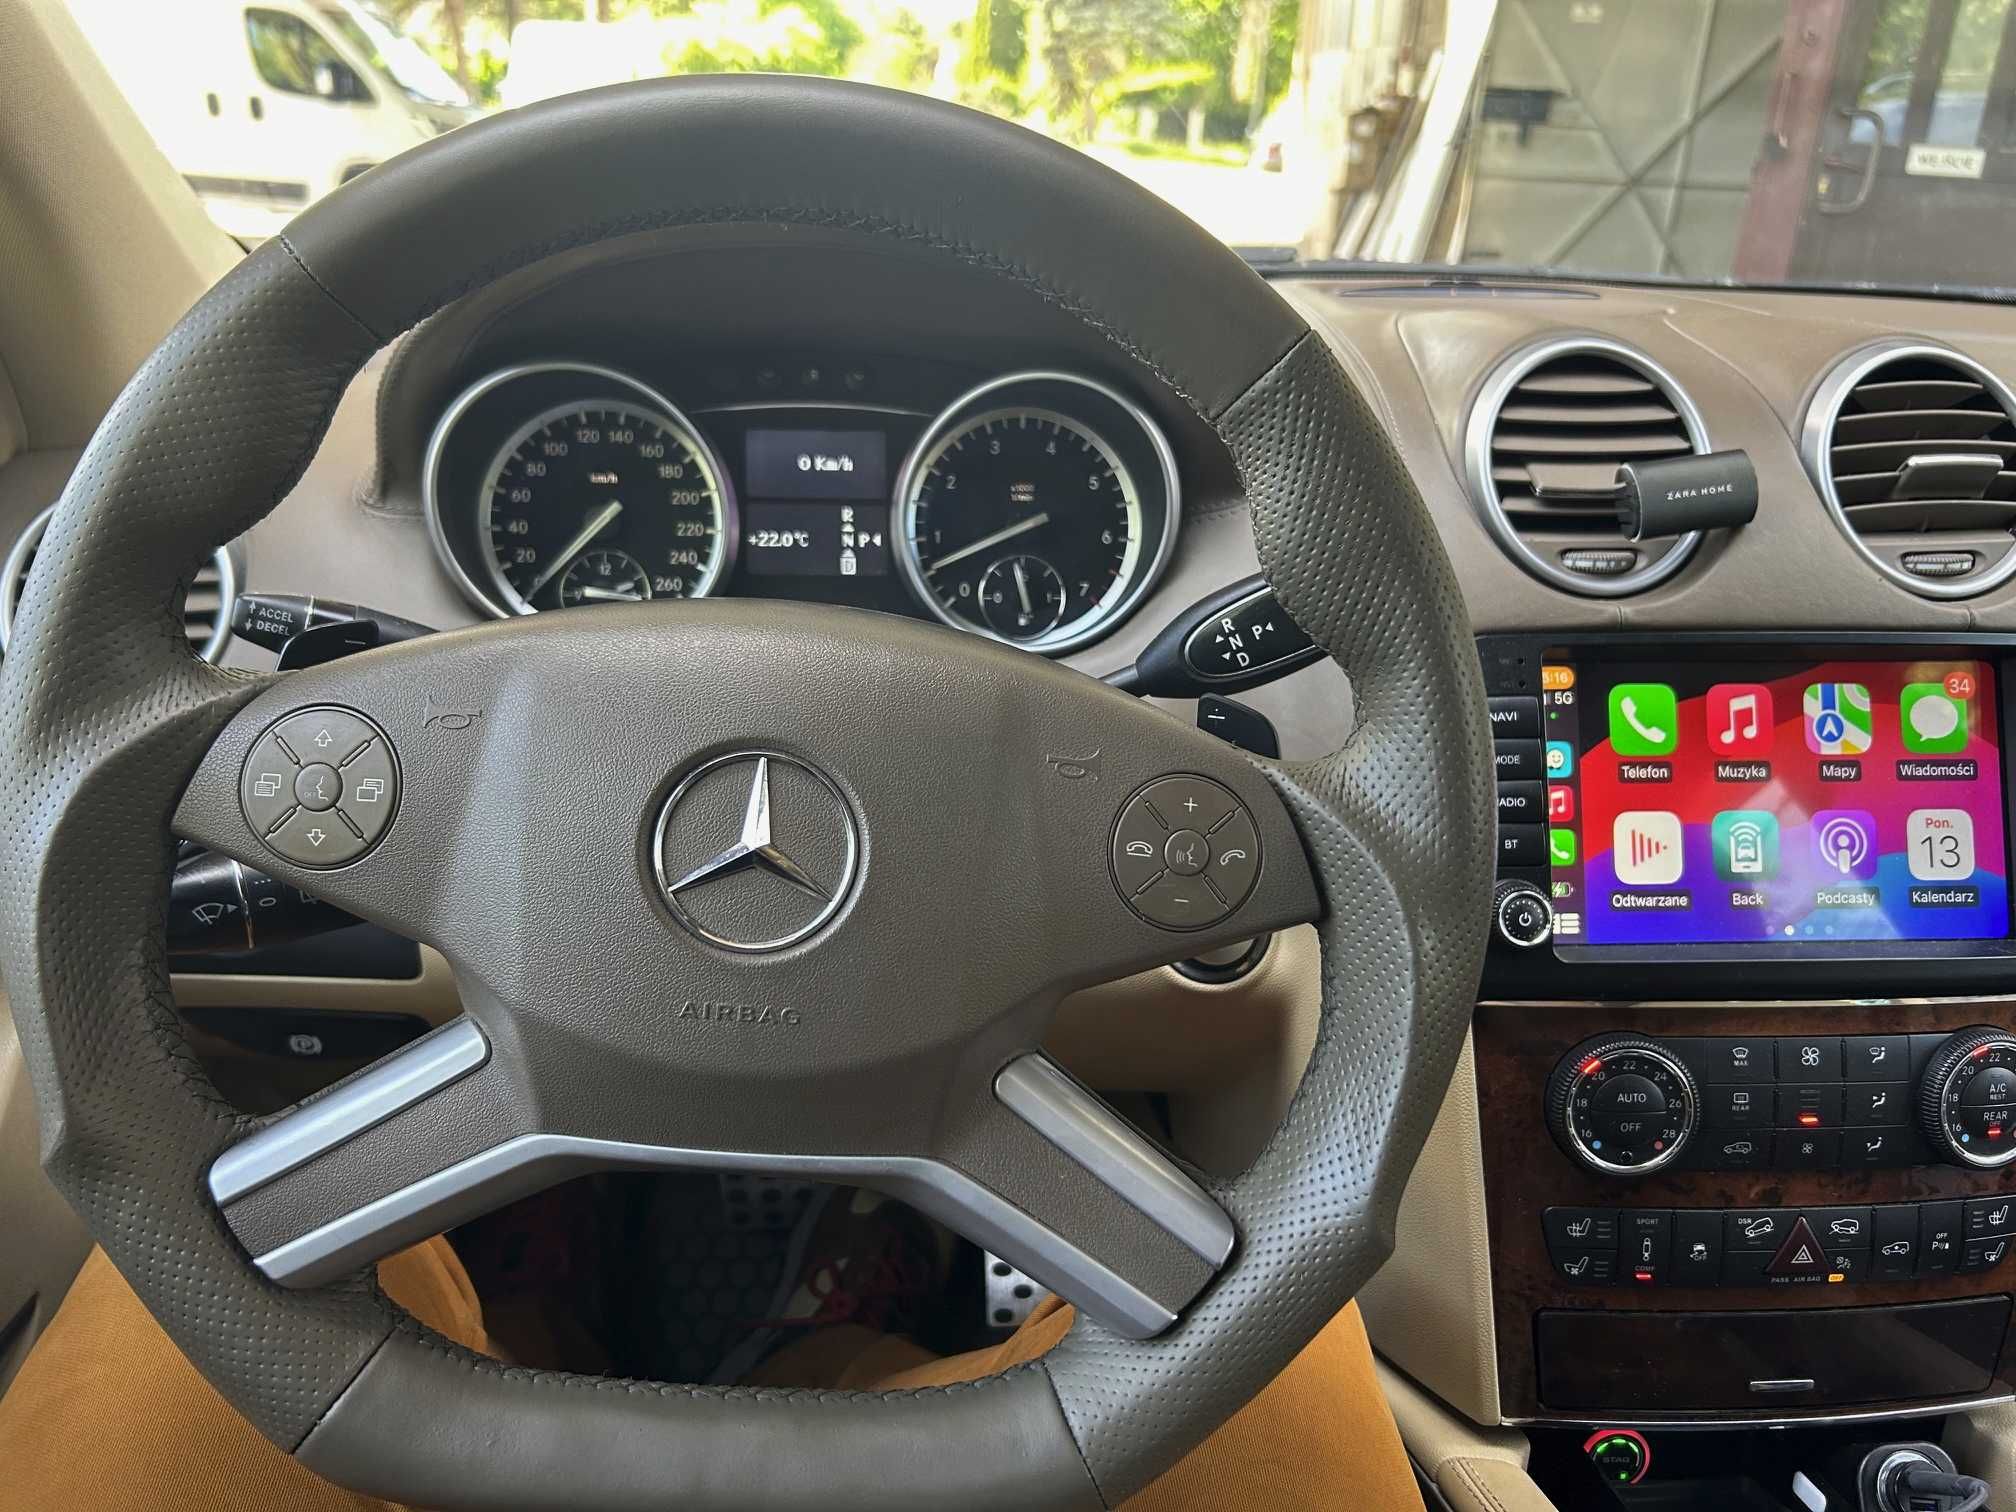 Mercedes GL550, gaz, bi-led projektory, car play, ideał, zamiana